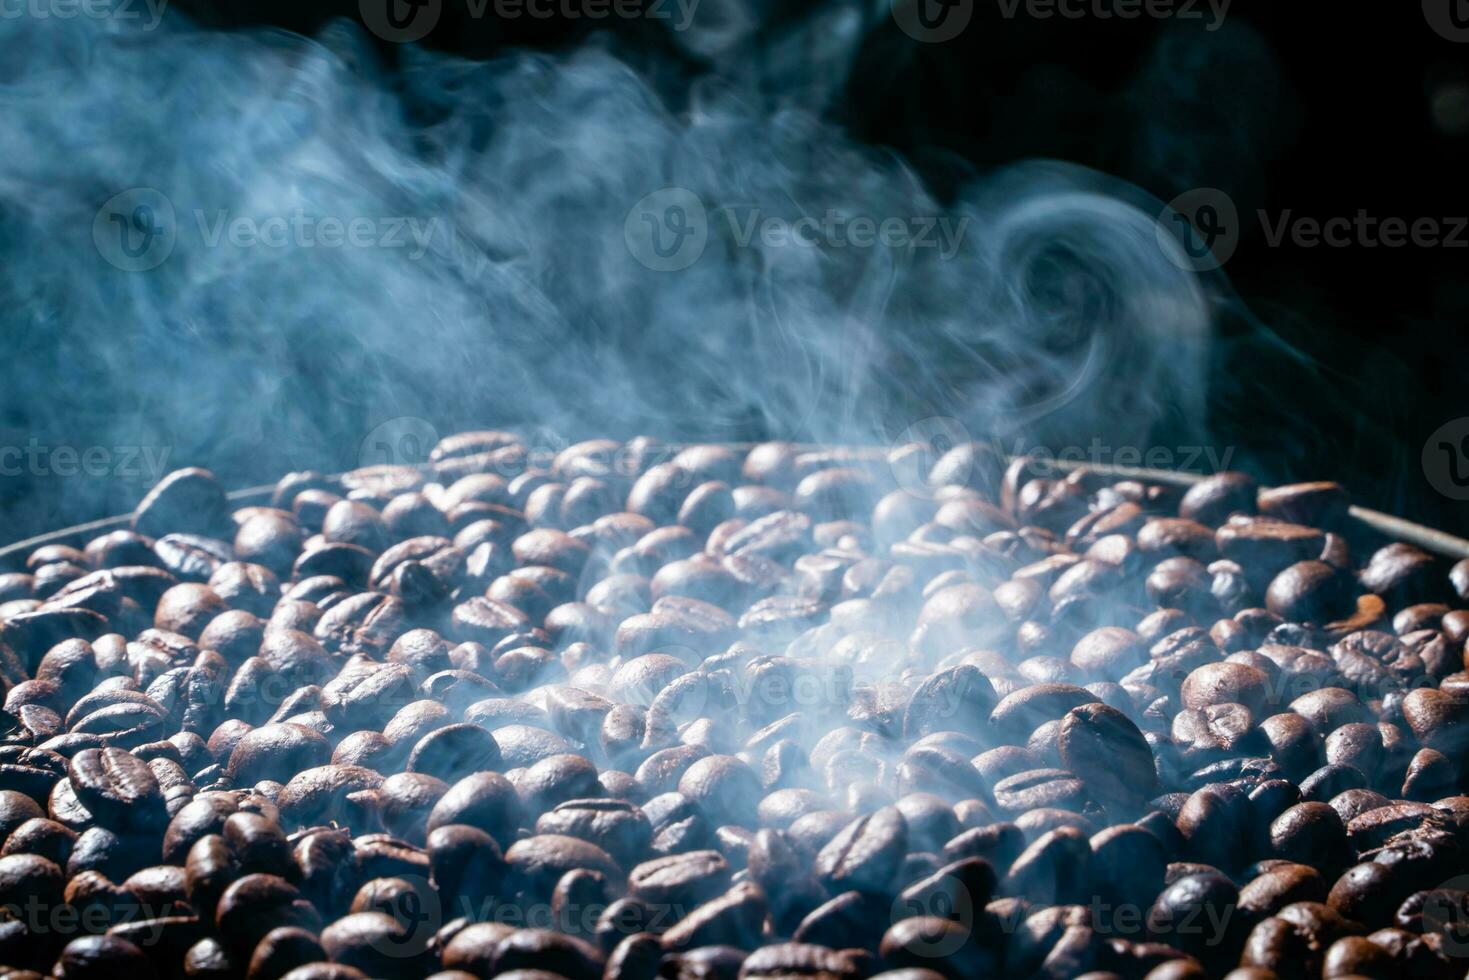 Kaffee Bohnen Braten mit Rauch, selektiv Fokus, und Sanft Fokus. foto